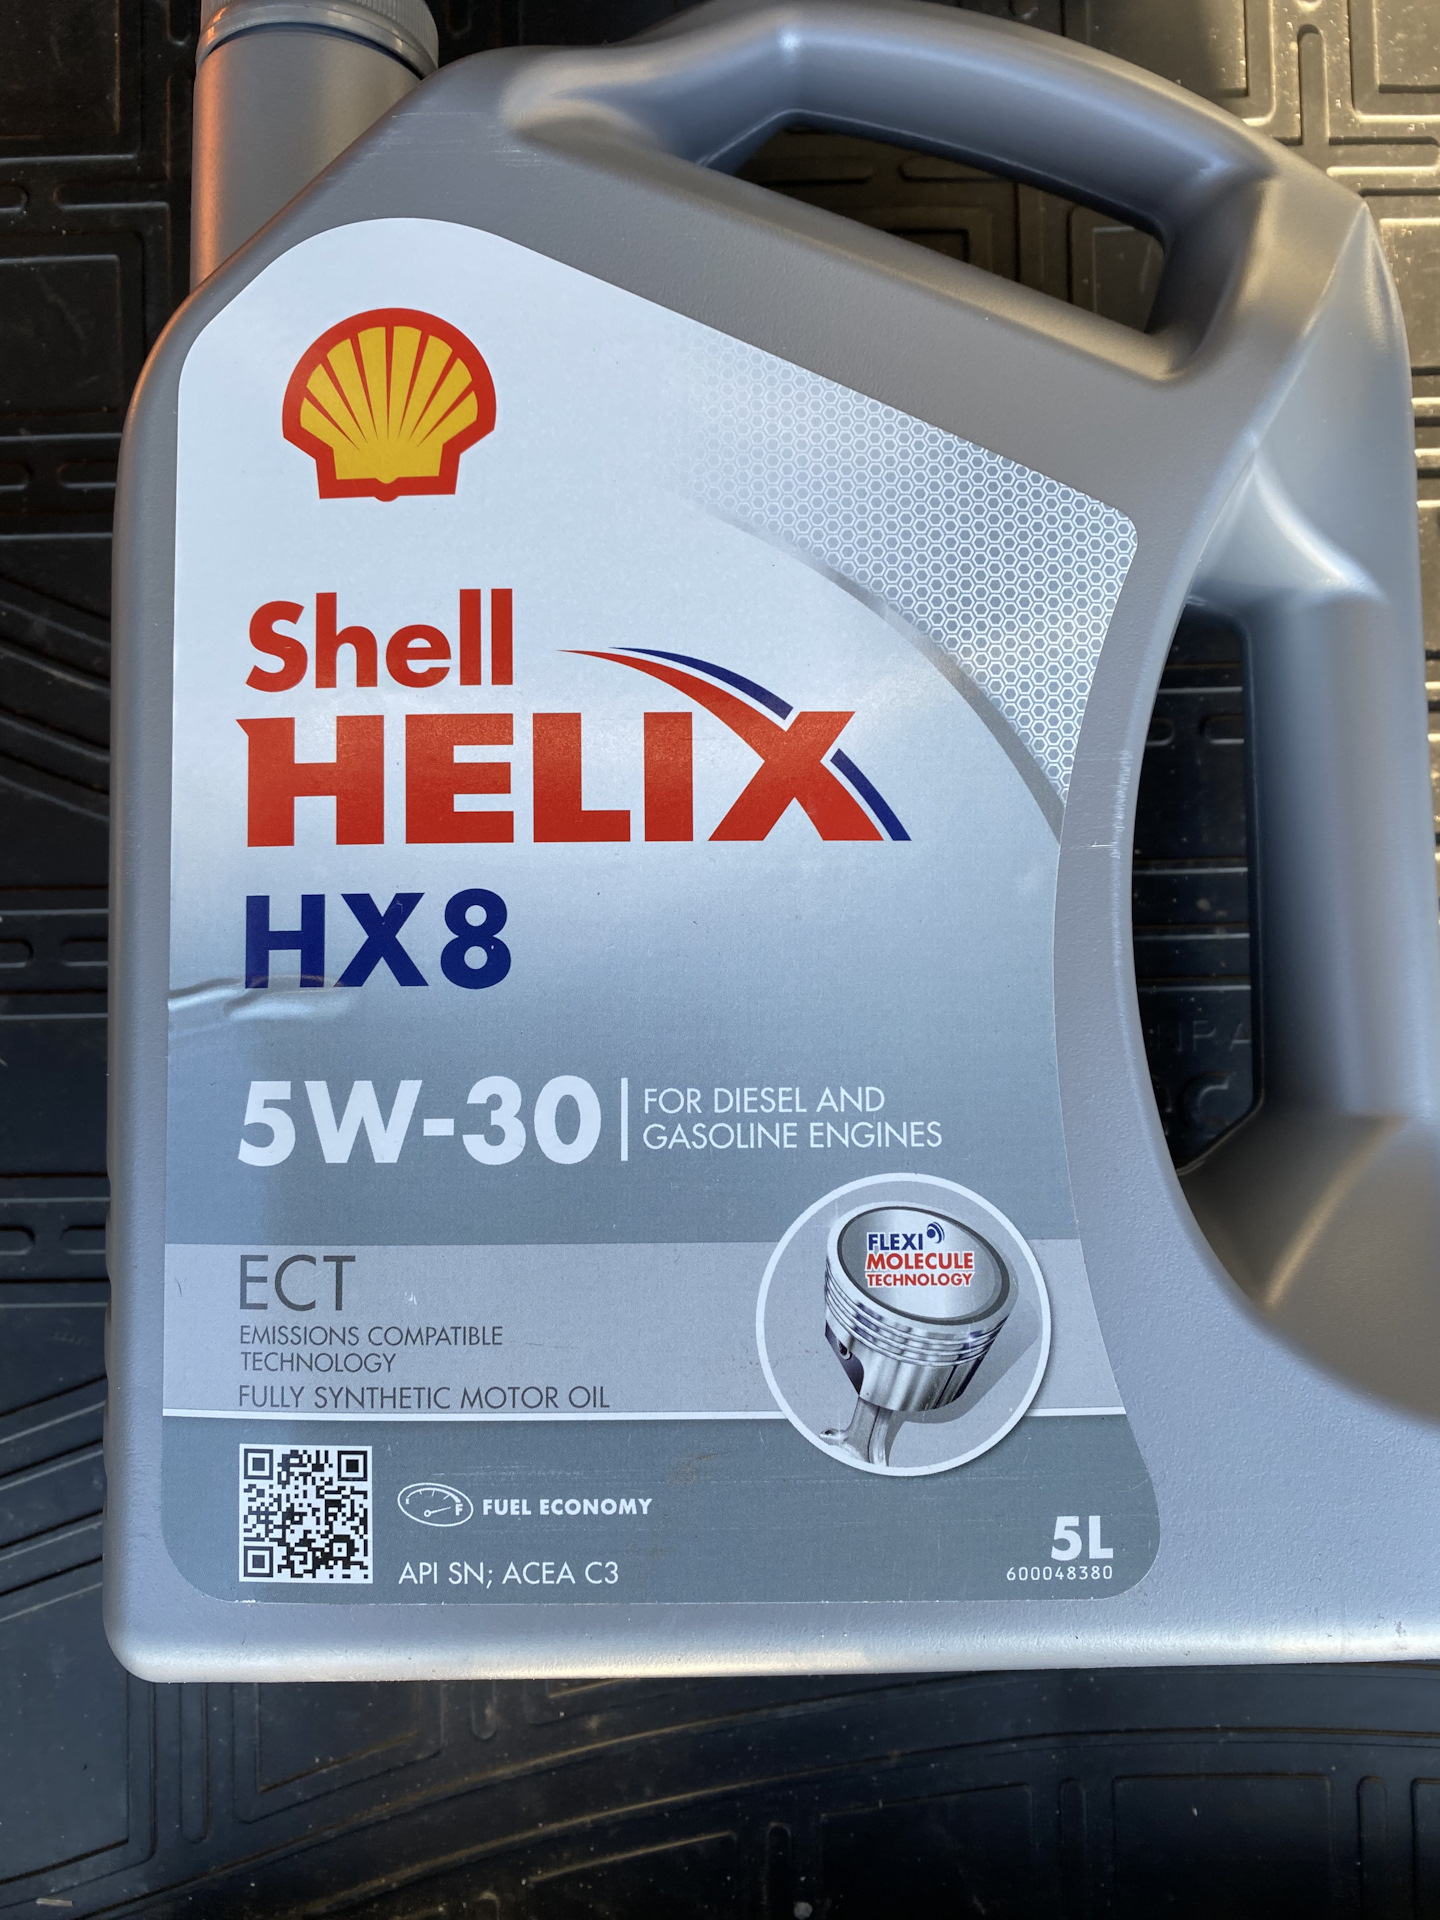 Масло helix hx8 5w 30. Shell hx8 5w30. Масло Шелл 5w30. Шелл Хеликс hx8 5w30. 2 Shell Helix hx8 ect 5w-30.